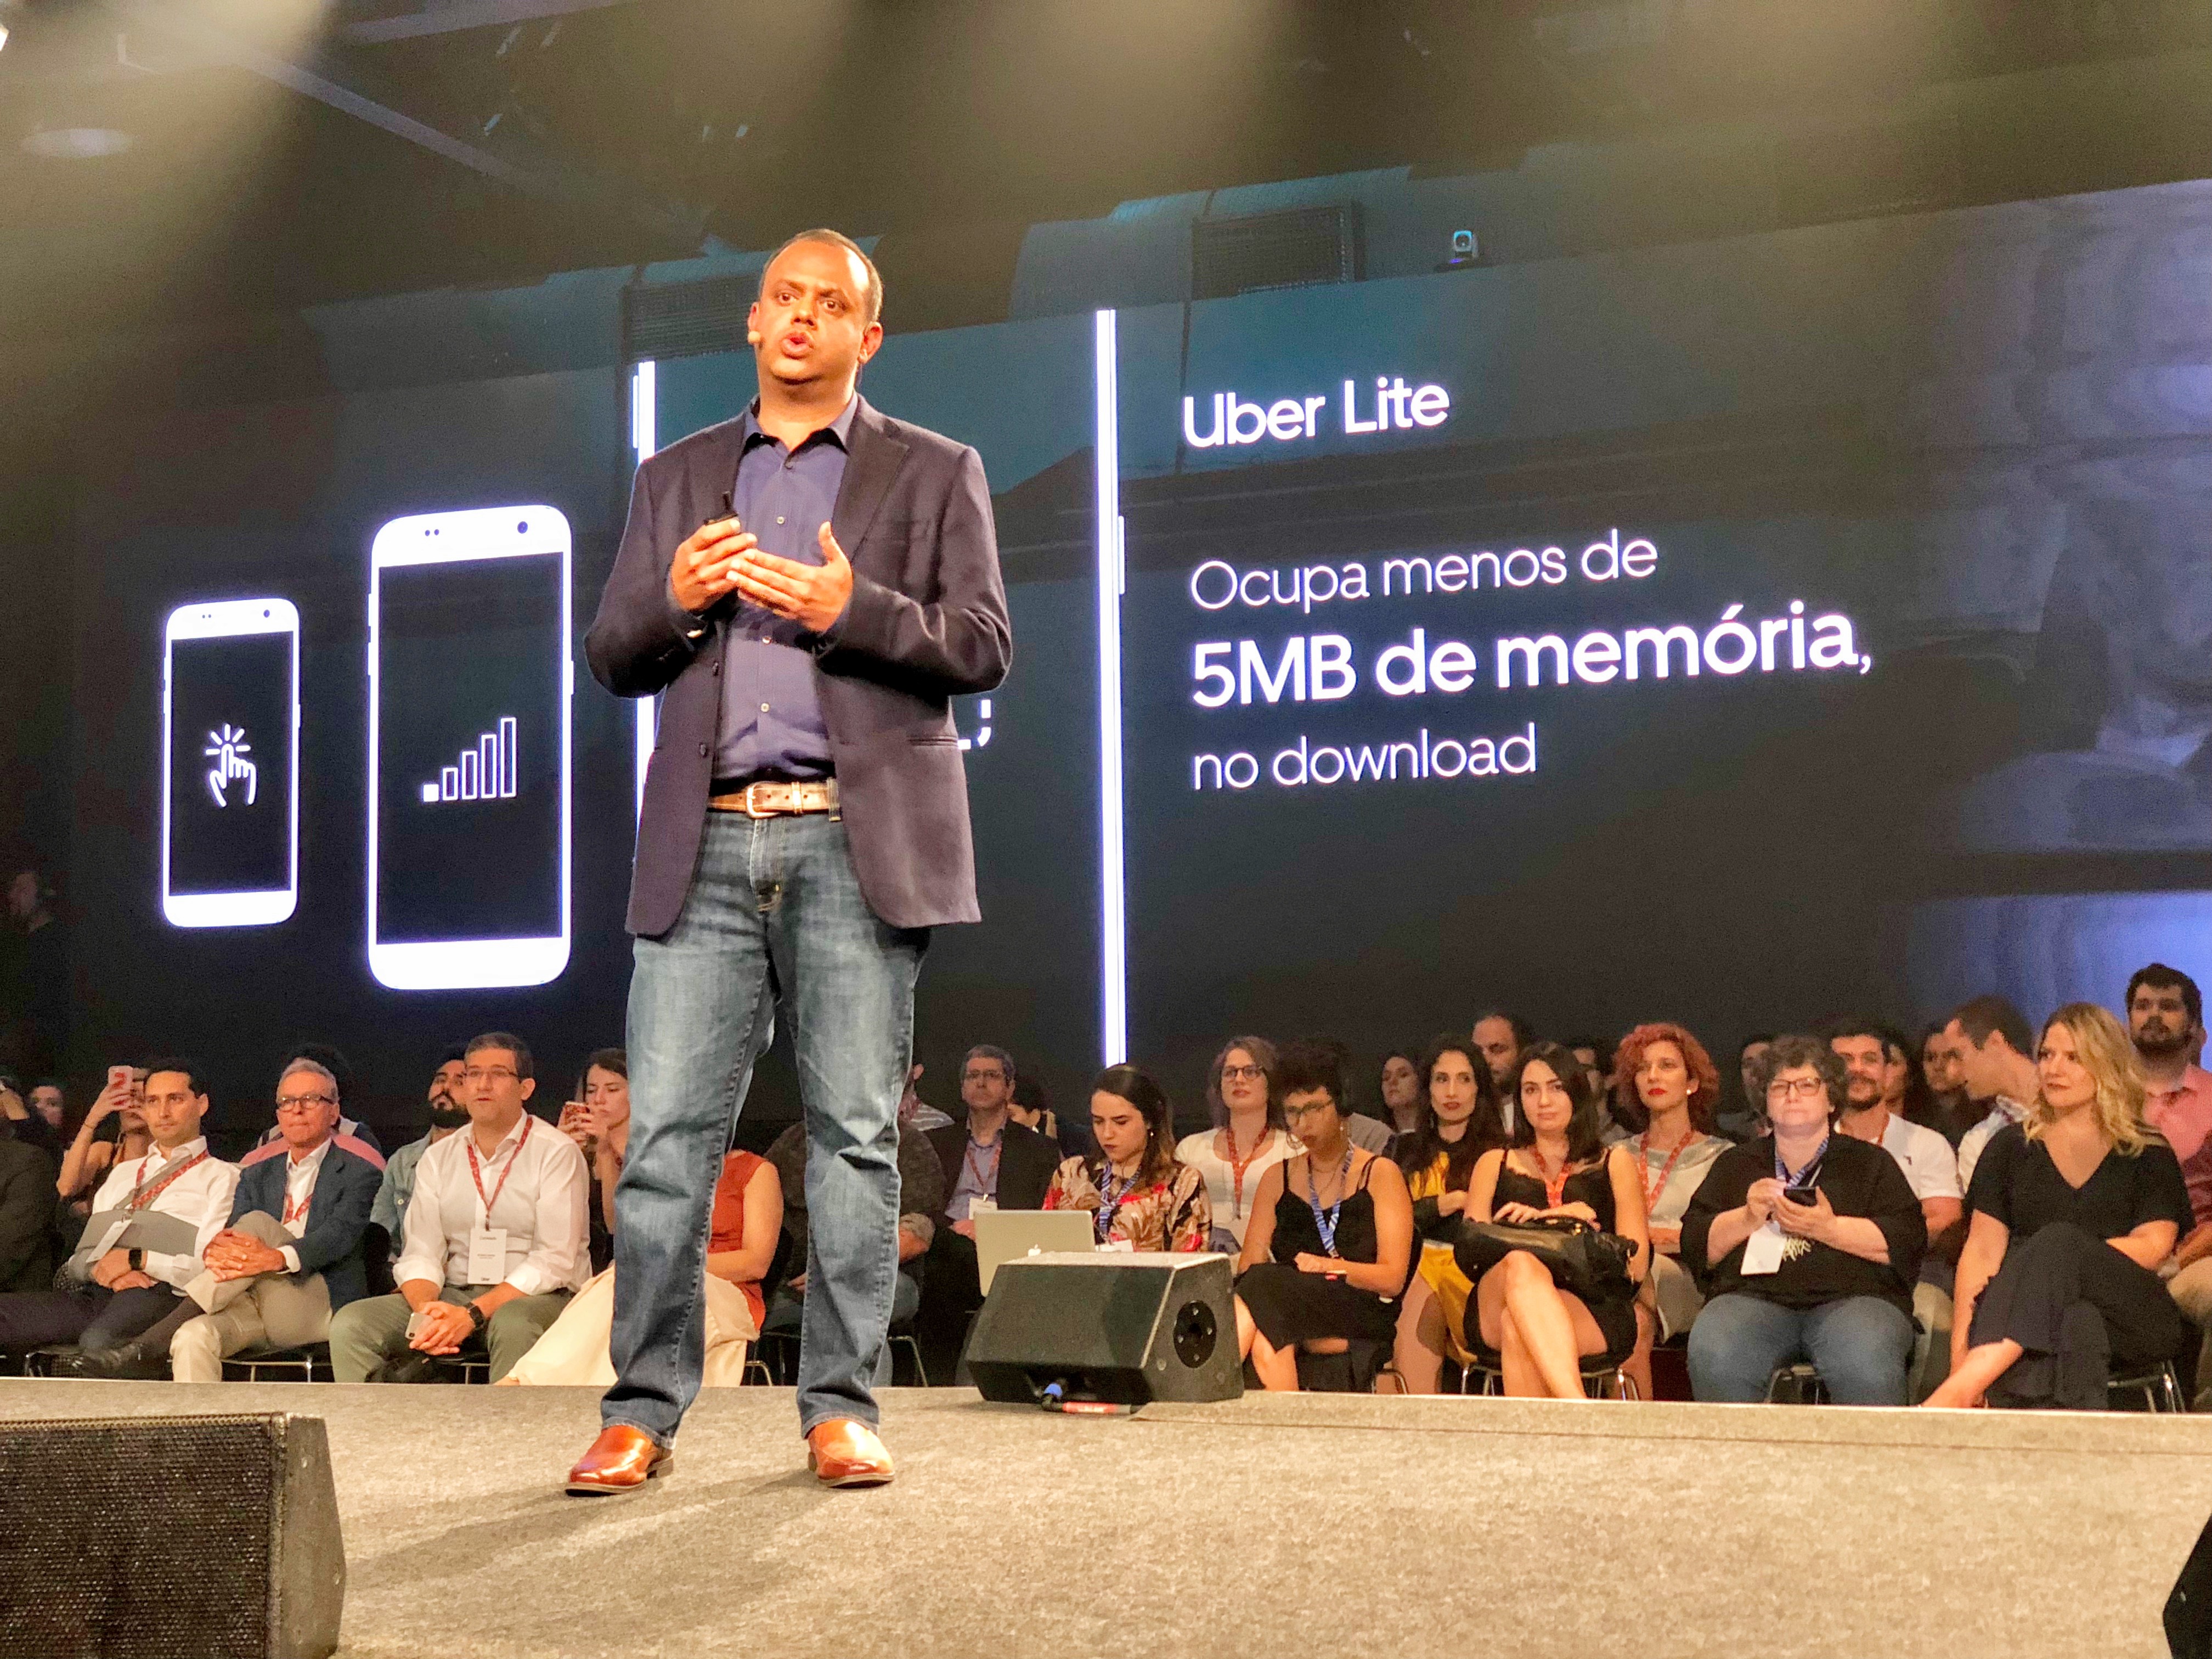 Uber Lite é lançado no Brasil com app que tem apenas 5 MB